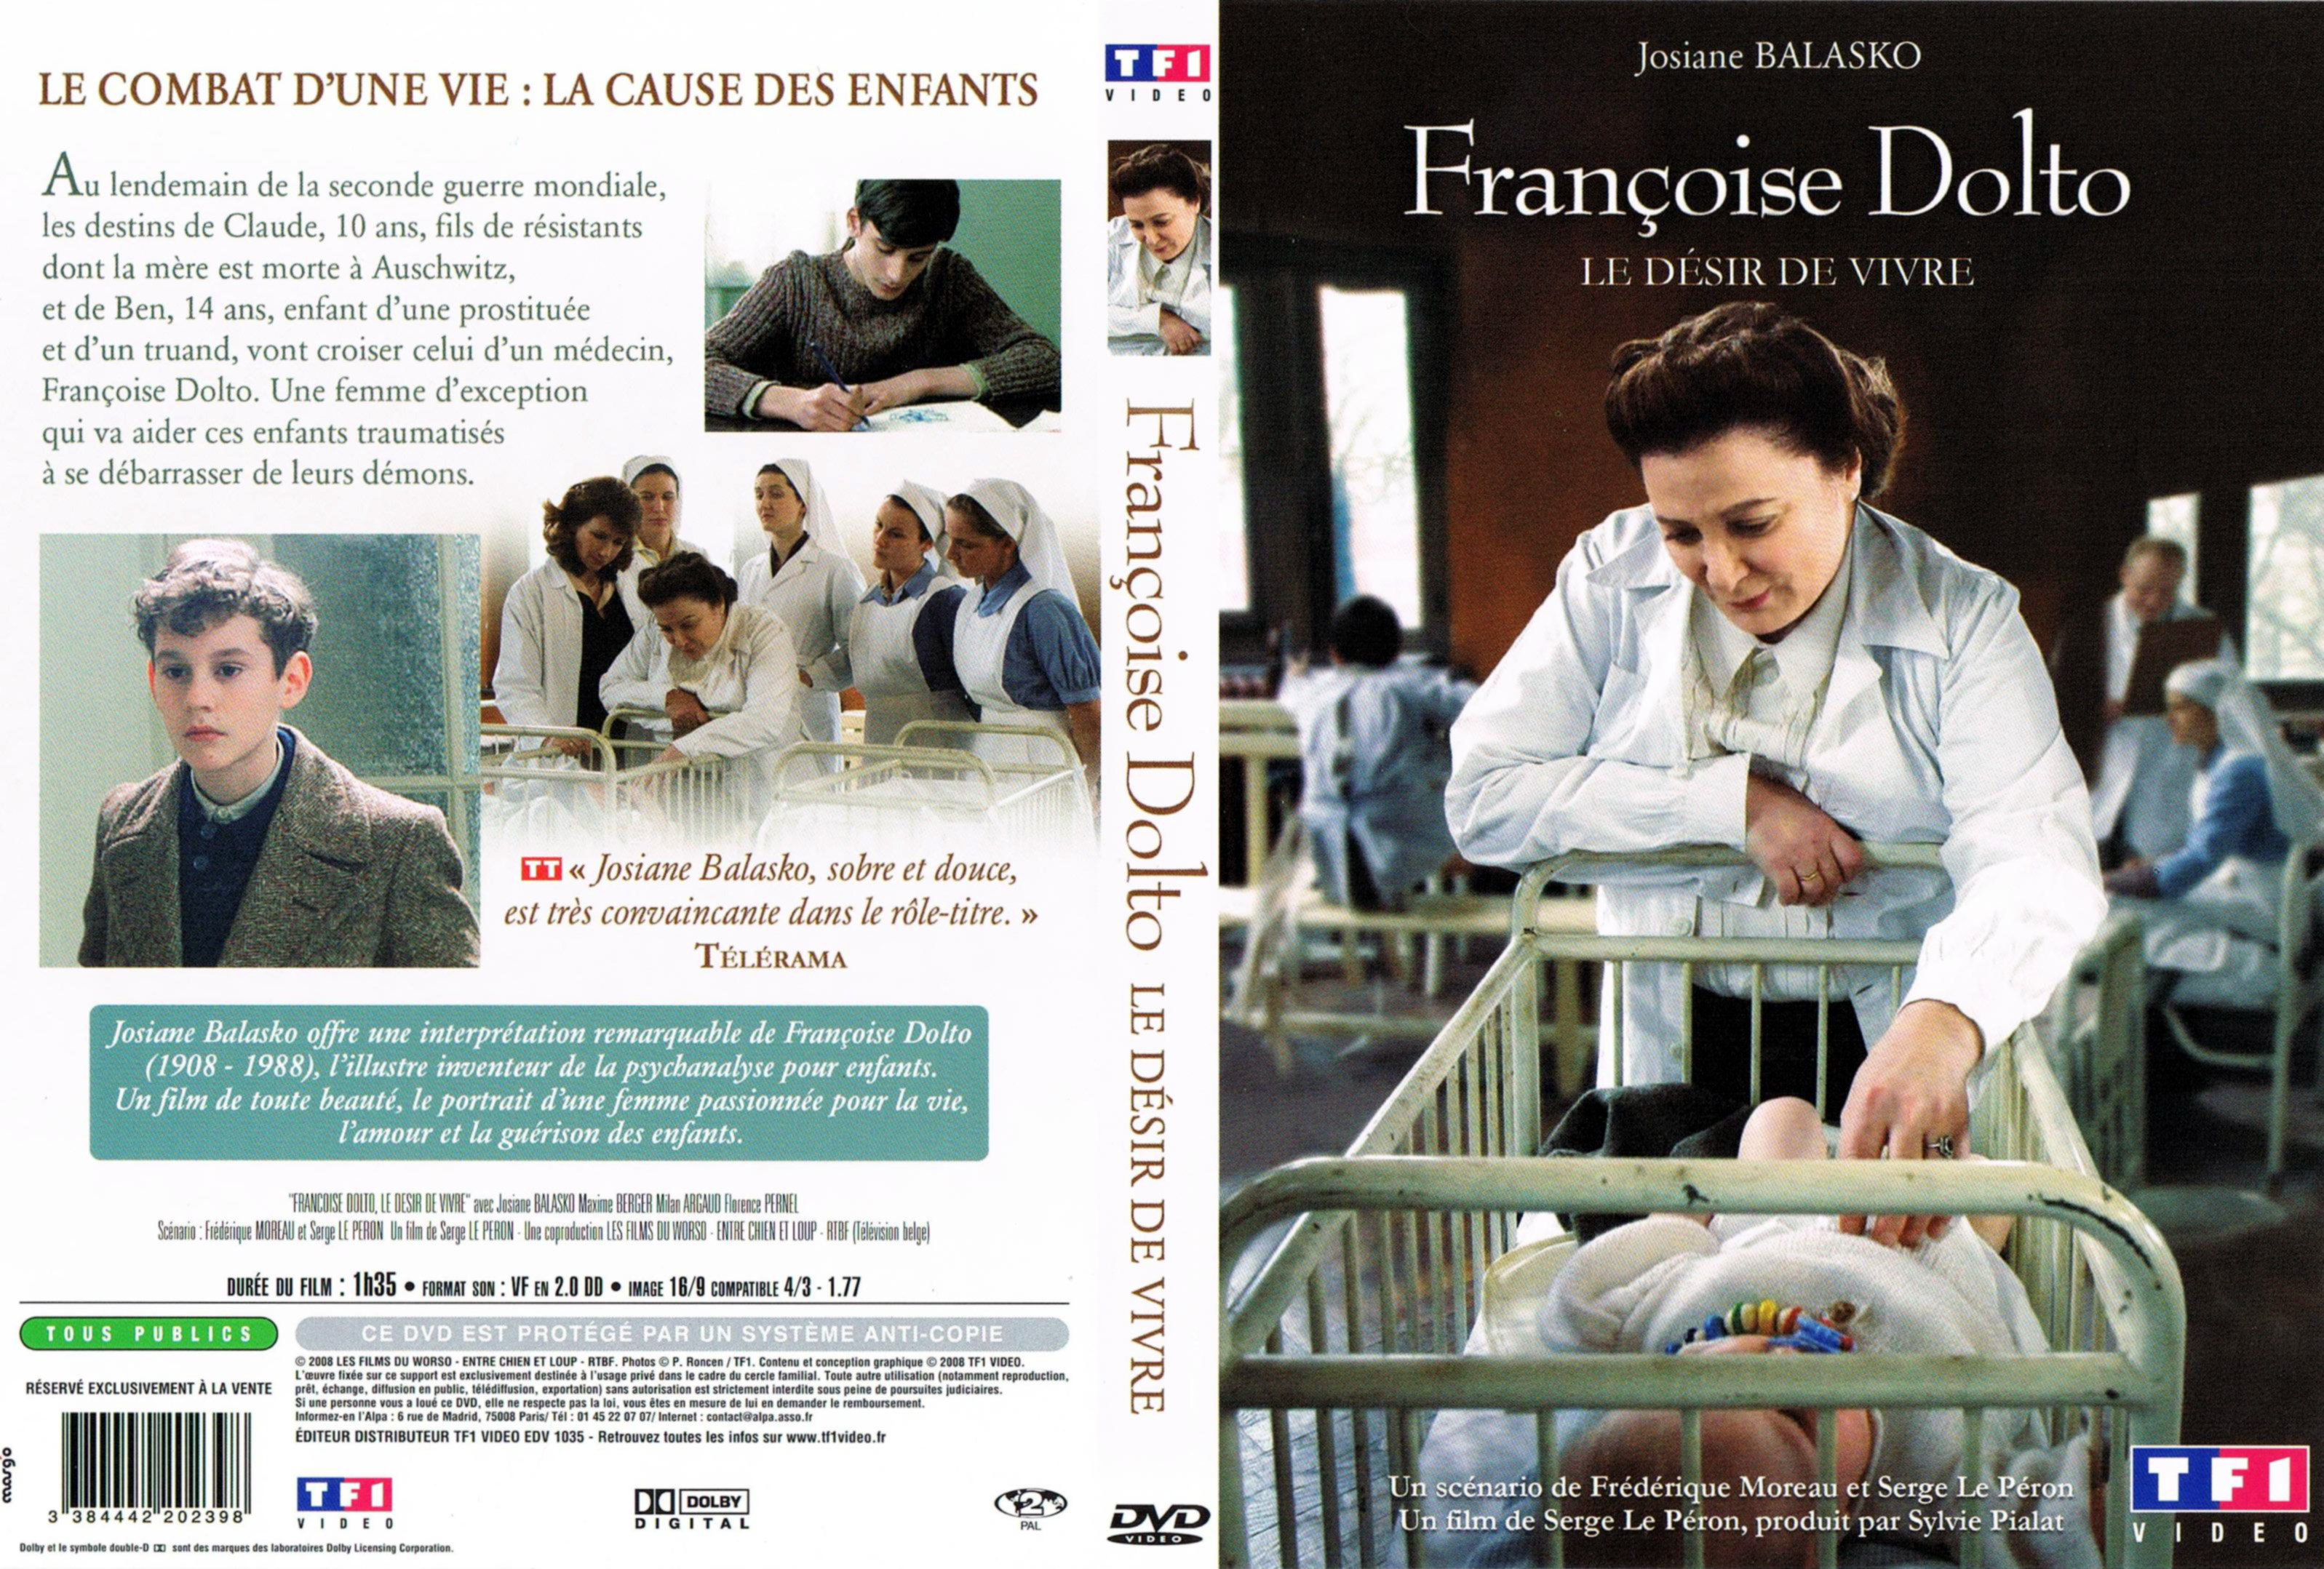 Jaquette DVD Francoise Dolto - Le dsir de vivre